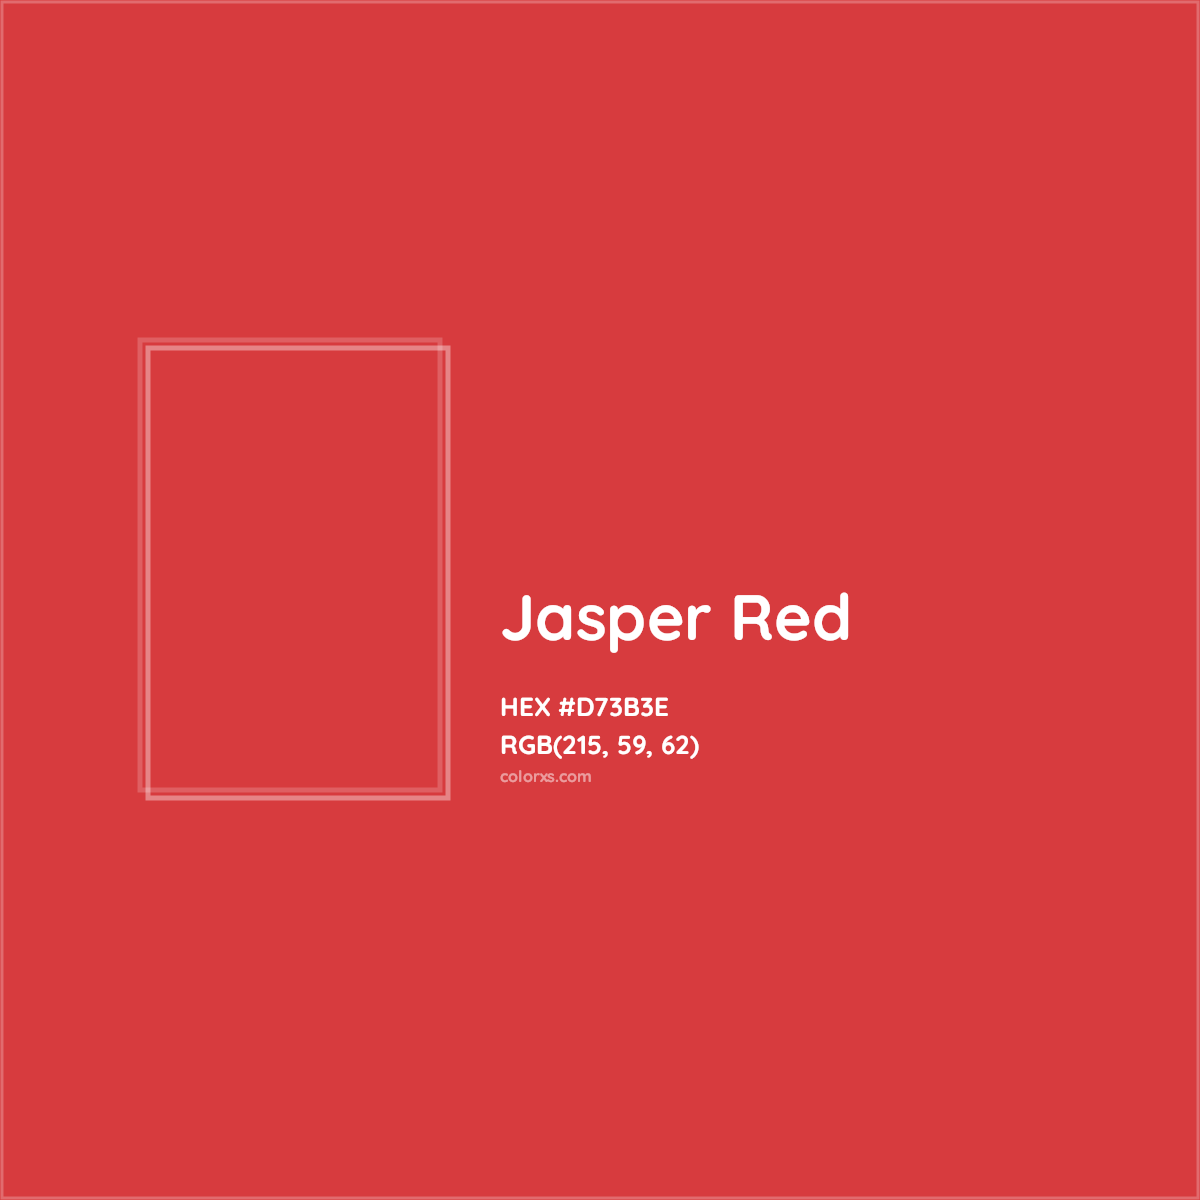 HEX #D73B3E Jasper Red Color - Color Code